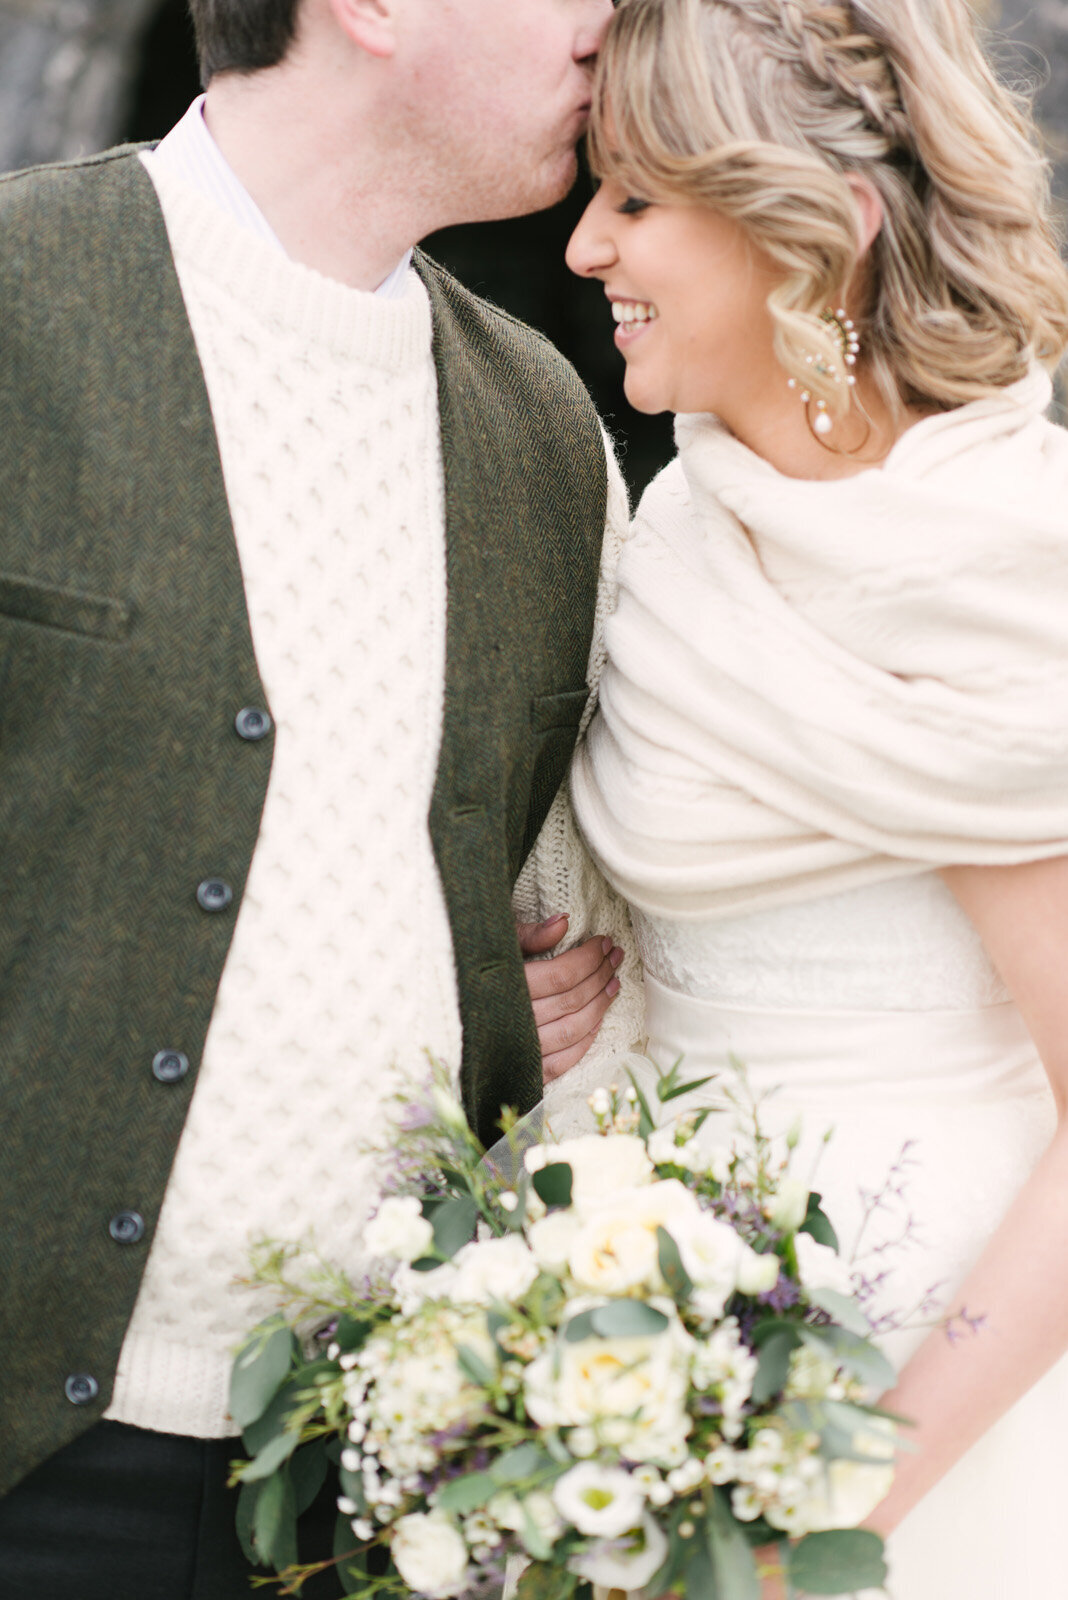 Kate-Murtaugh-Events-Ireland-international-destination-wedding-planner-Irish-elopement-couple-County-Clare-wildflower-bouquet-portrait